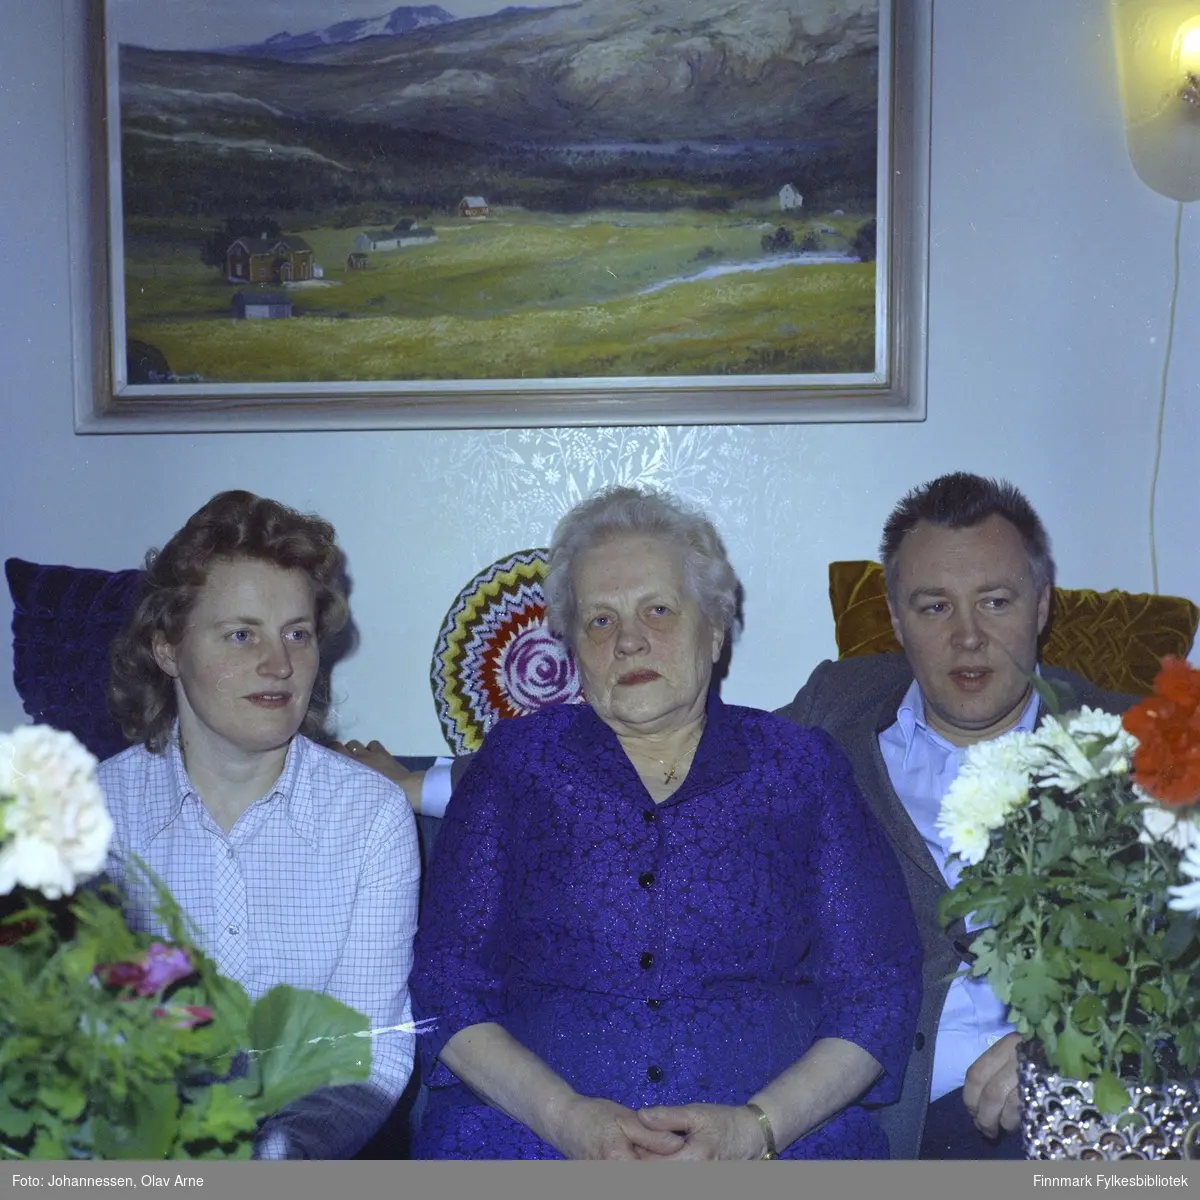 Fra venstre: Laura Olsborg f. Lauritsen (i midten) og sønnen Leif til høyre

Foto trolig tatt på 1960/70-tallet